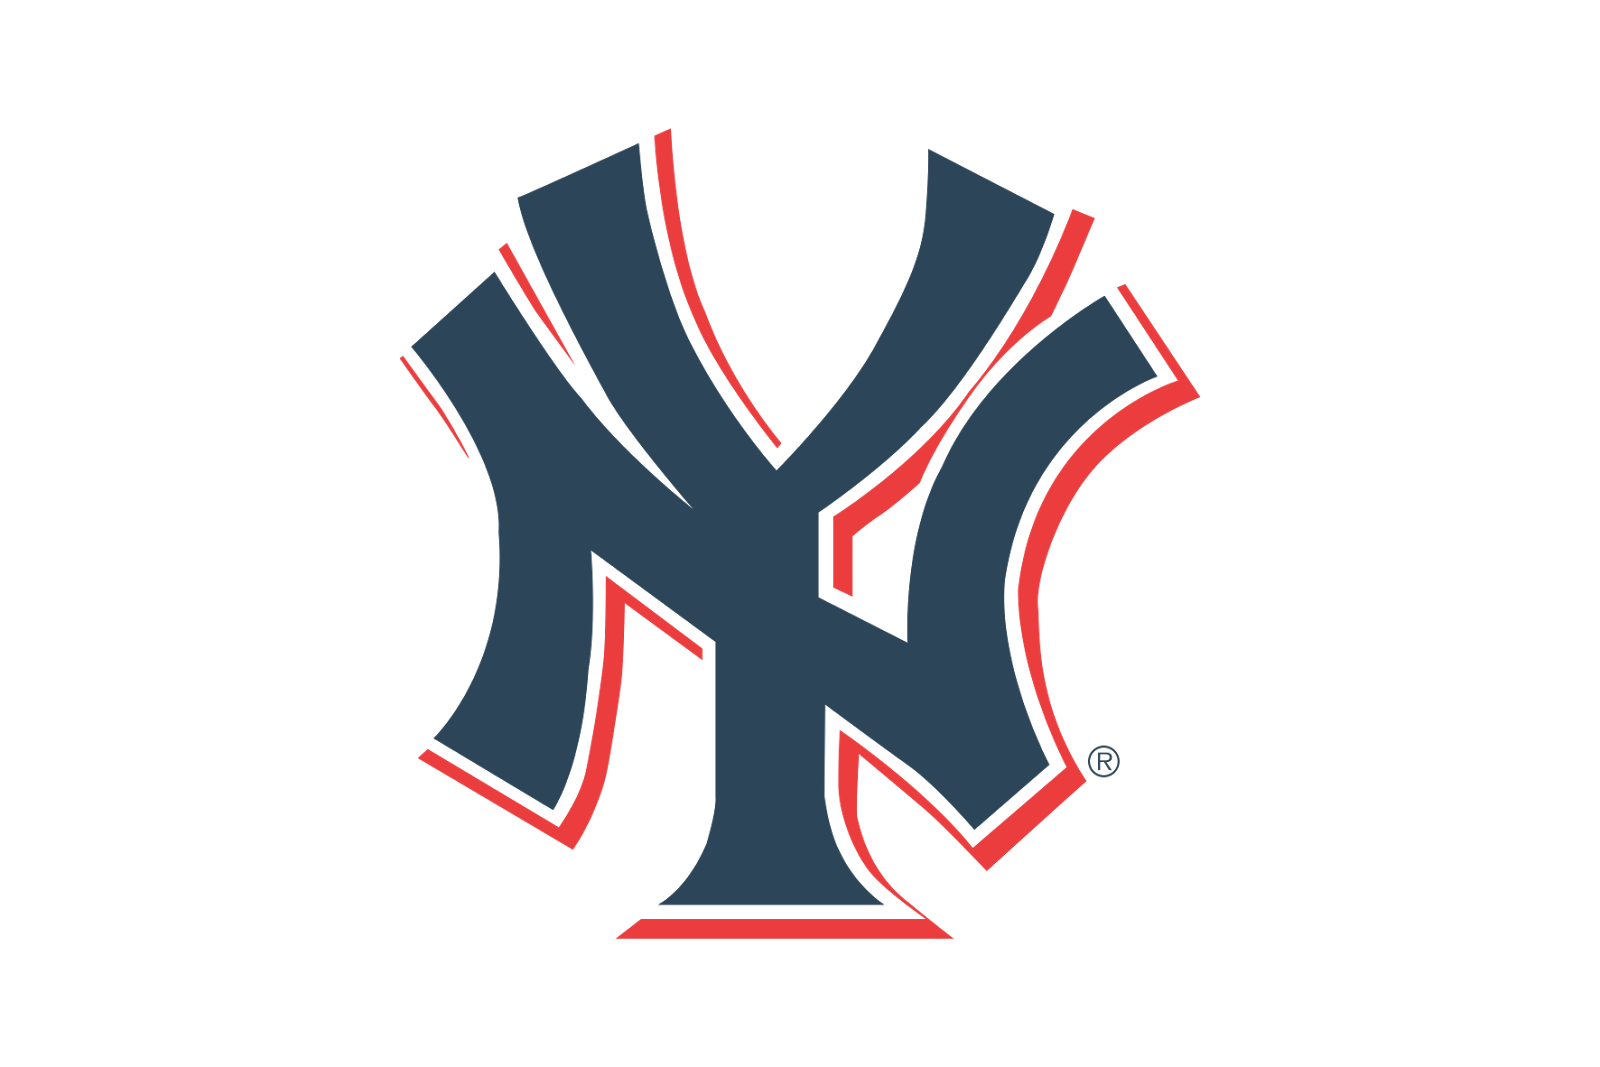 Yankees Vector at GetDrawings Free download